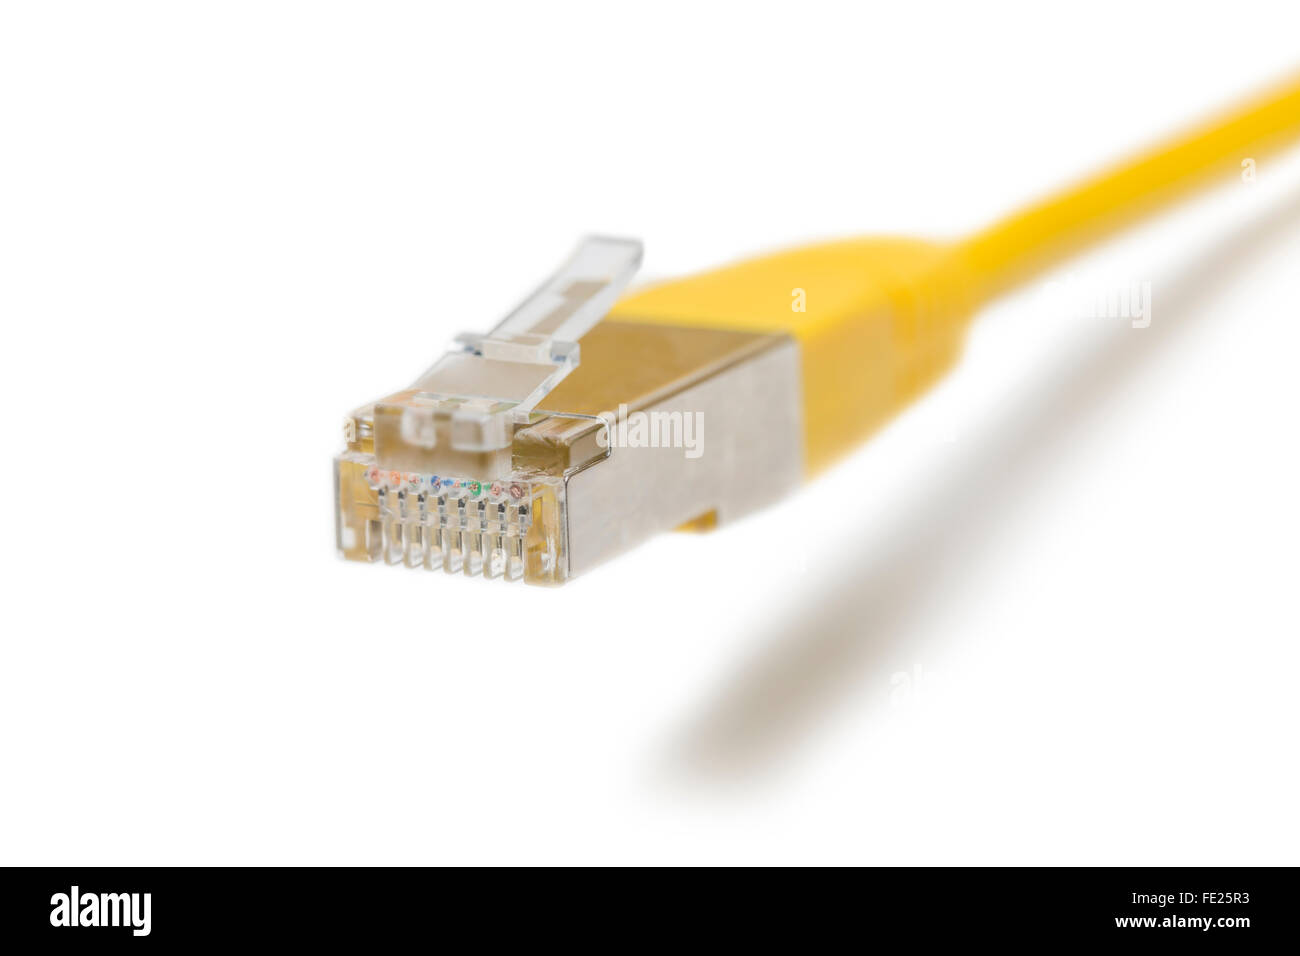 Vue rapprochée de la fiche RJ45 d'un câble LAN jaune Banque D'Images